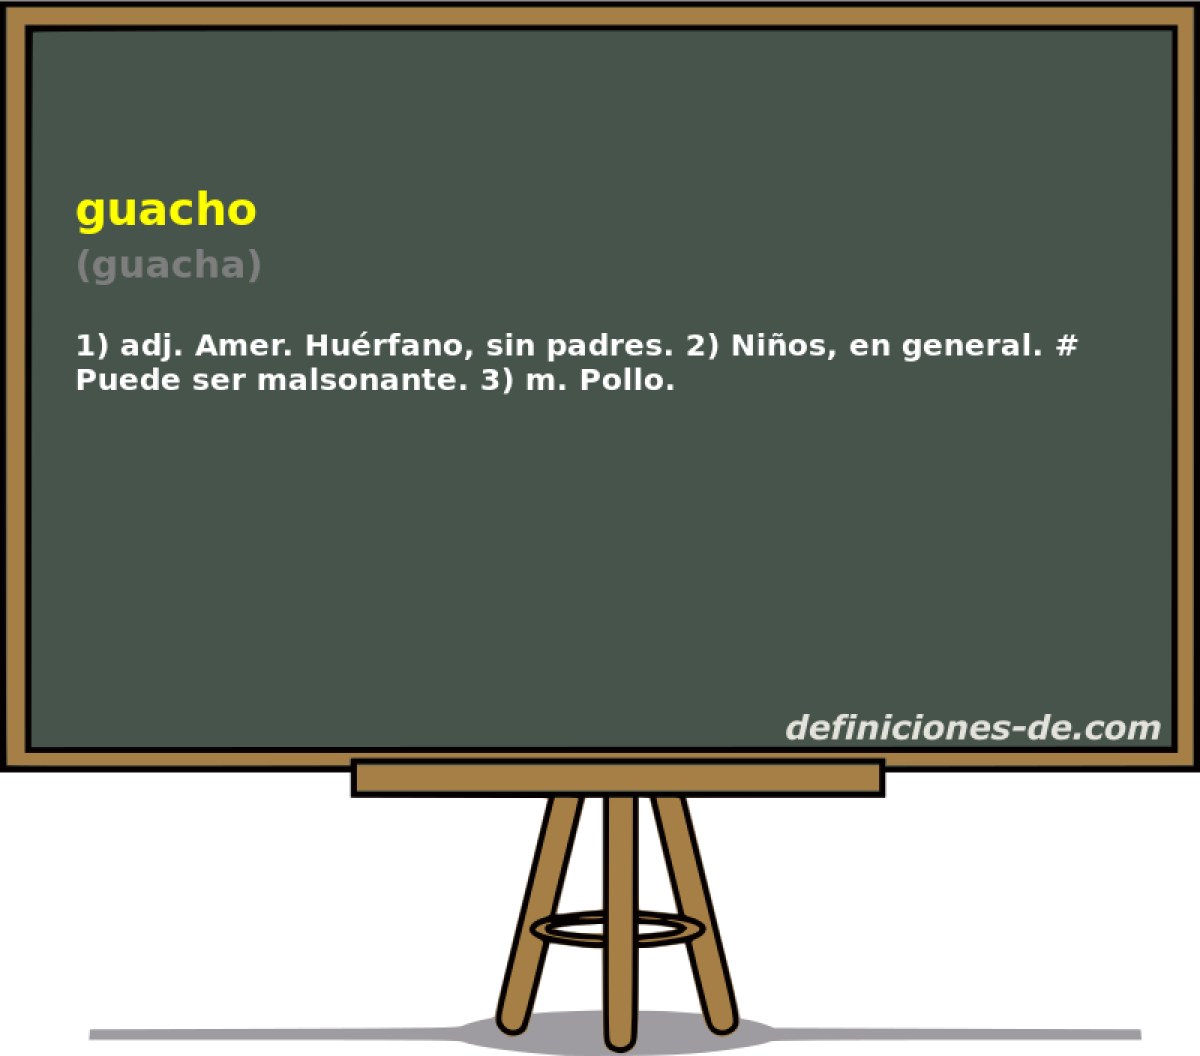 guacho (guacha)